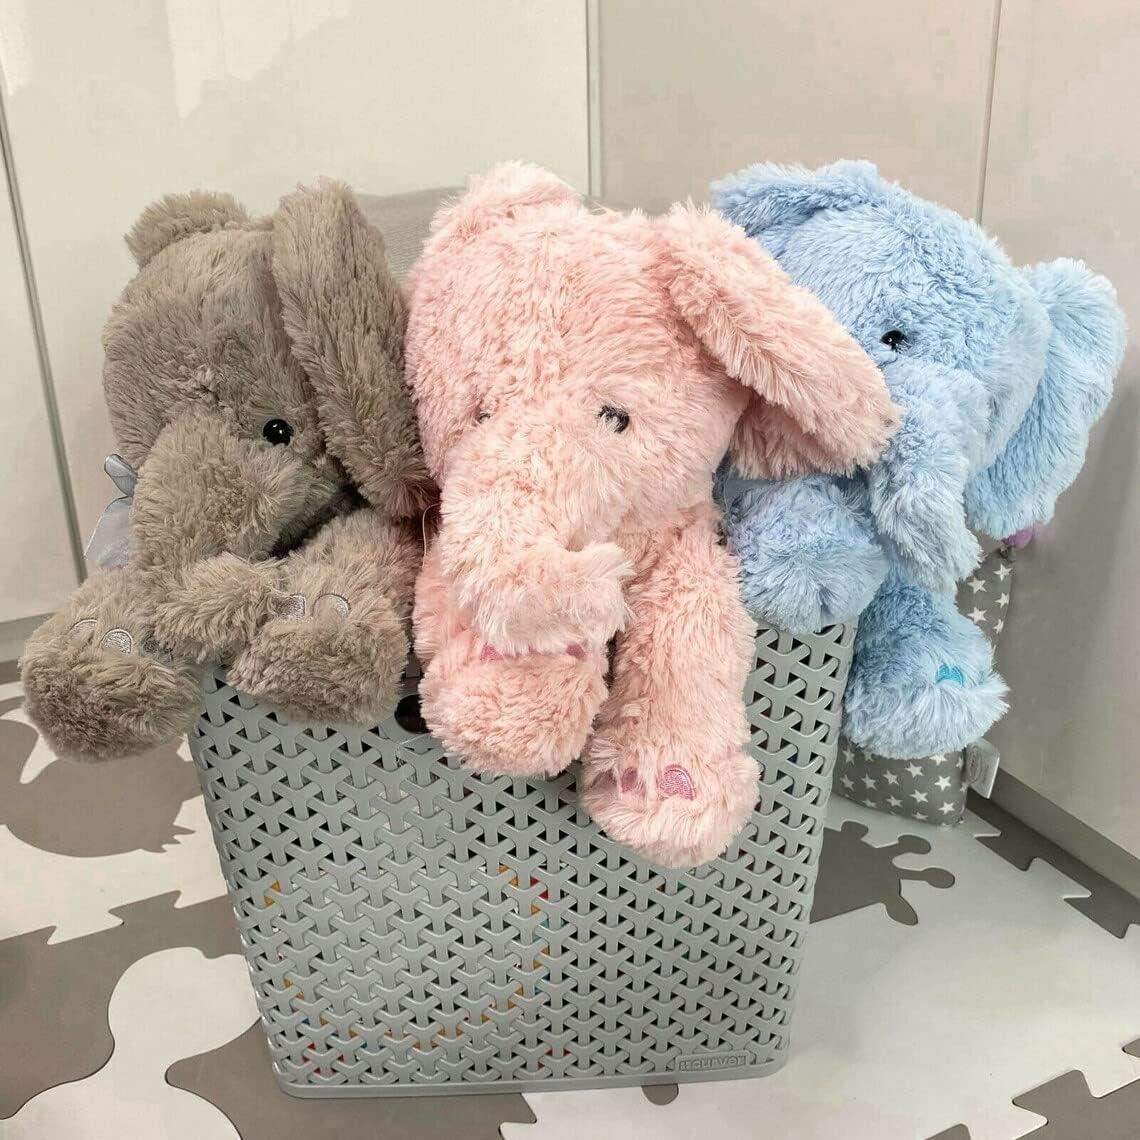 Grey Plush Elephant Soft Toys by The Magic Toy Shop - UKBuyZone